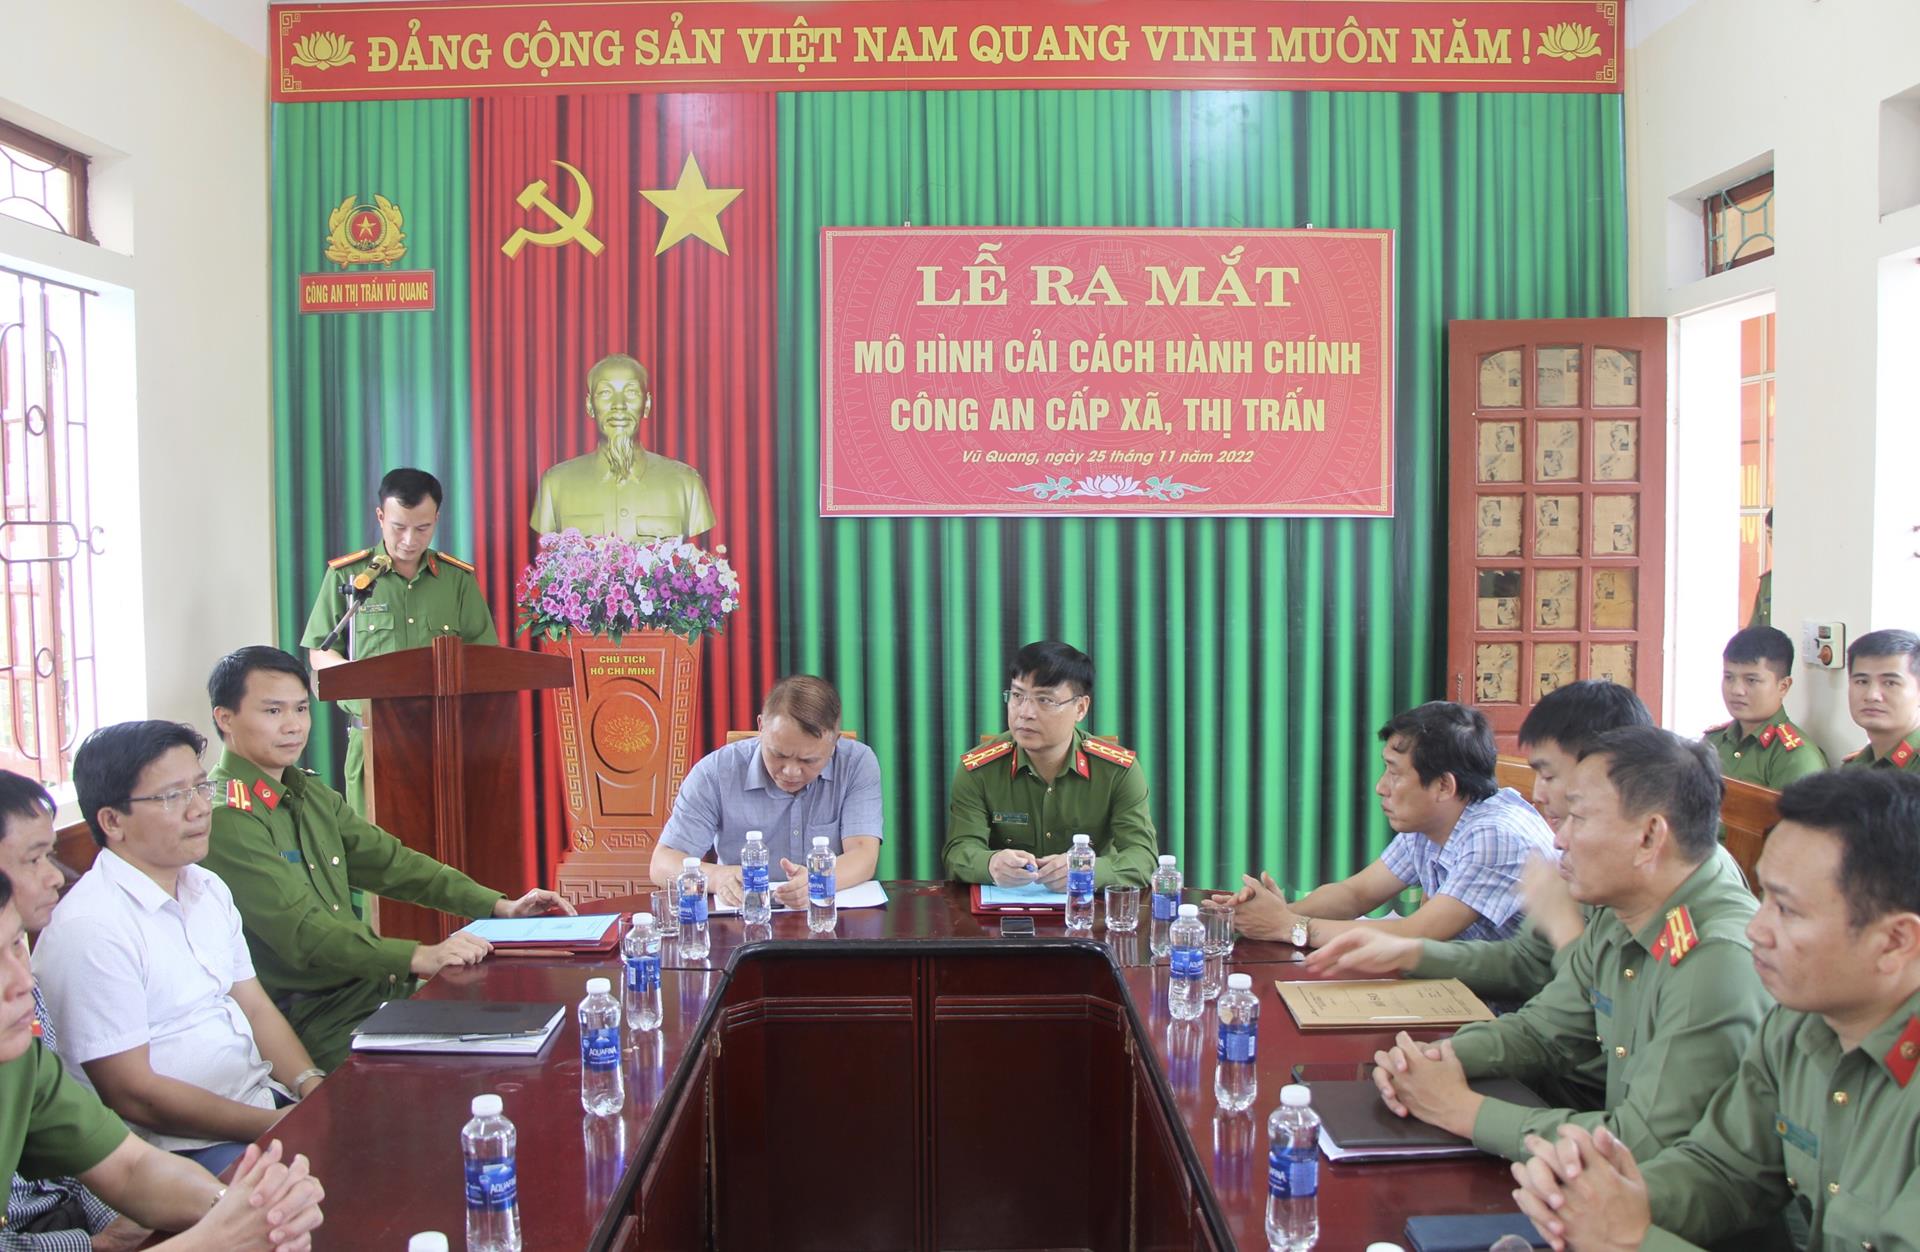 Huyện Vũ Quang ra mắt mô hình cải cách hành chính công an cấp xã, thị trấn